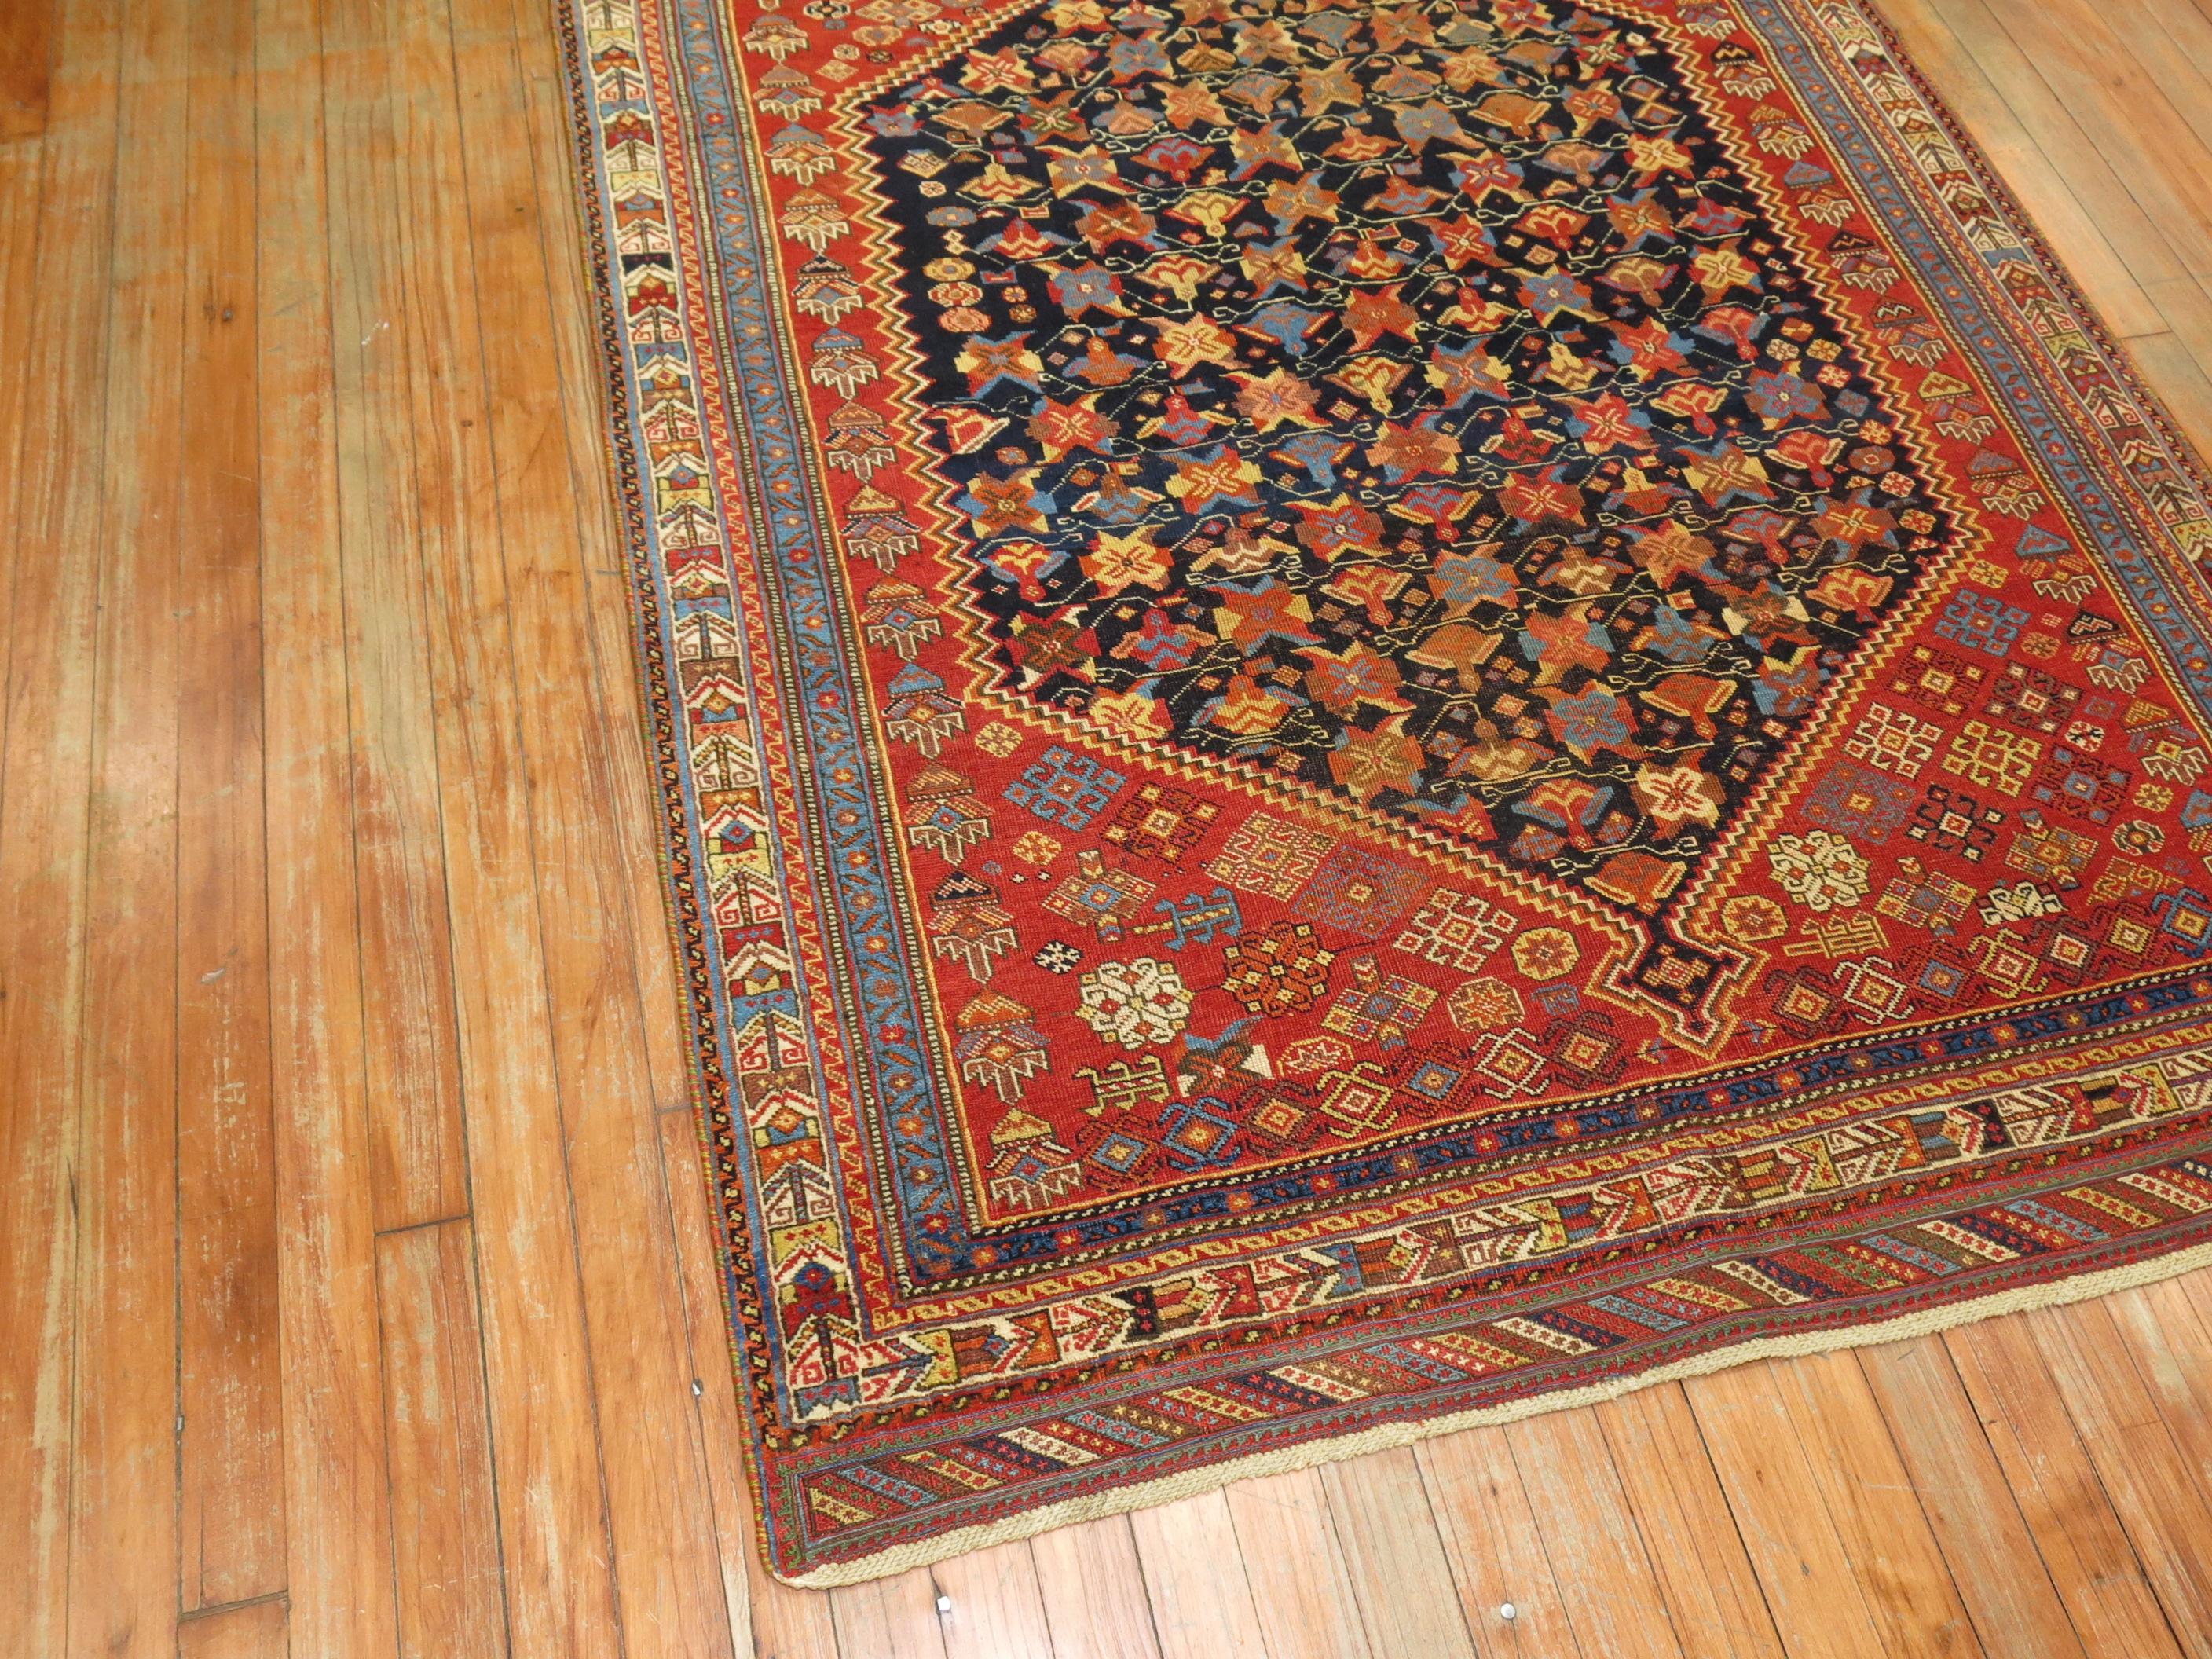 un tapis Persan Afshar de couleur Jazzy du début du 20ème siècle. Des couleurs vives et croustillantes. La qualité de celui-ci est la meilleure de son genre.

Mesures : 4'3'' x 6'

Les tapis Afshar anciens de haute qualité présentent des